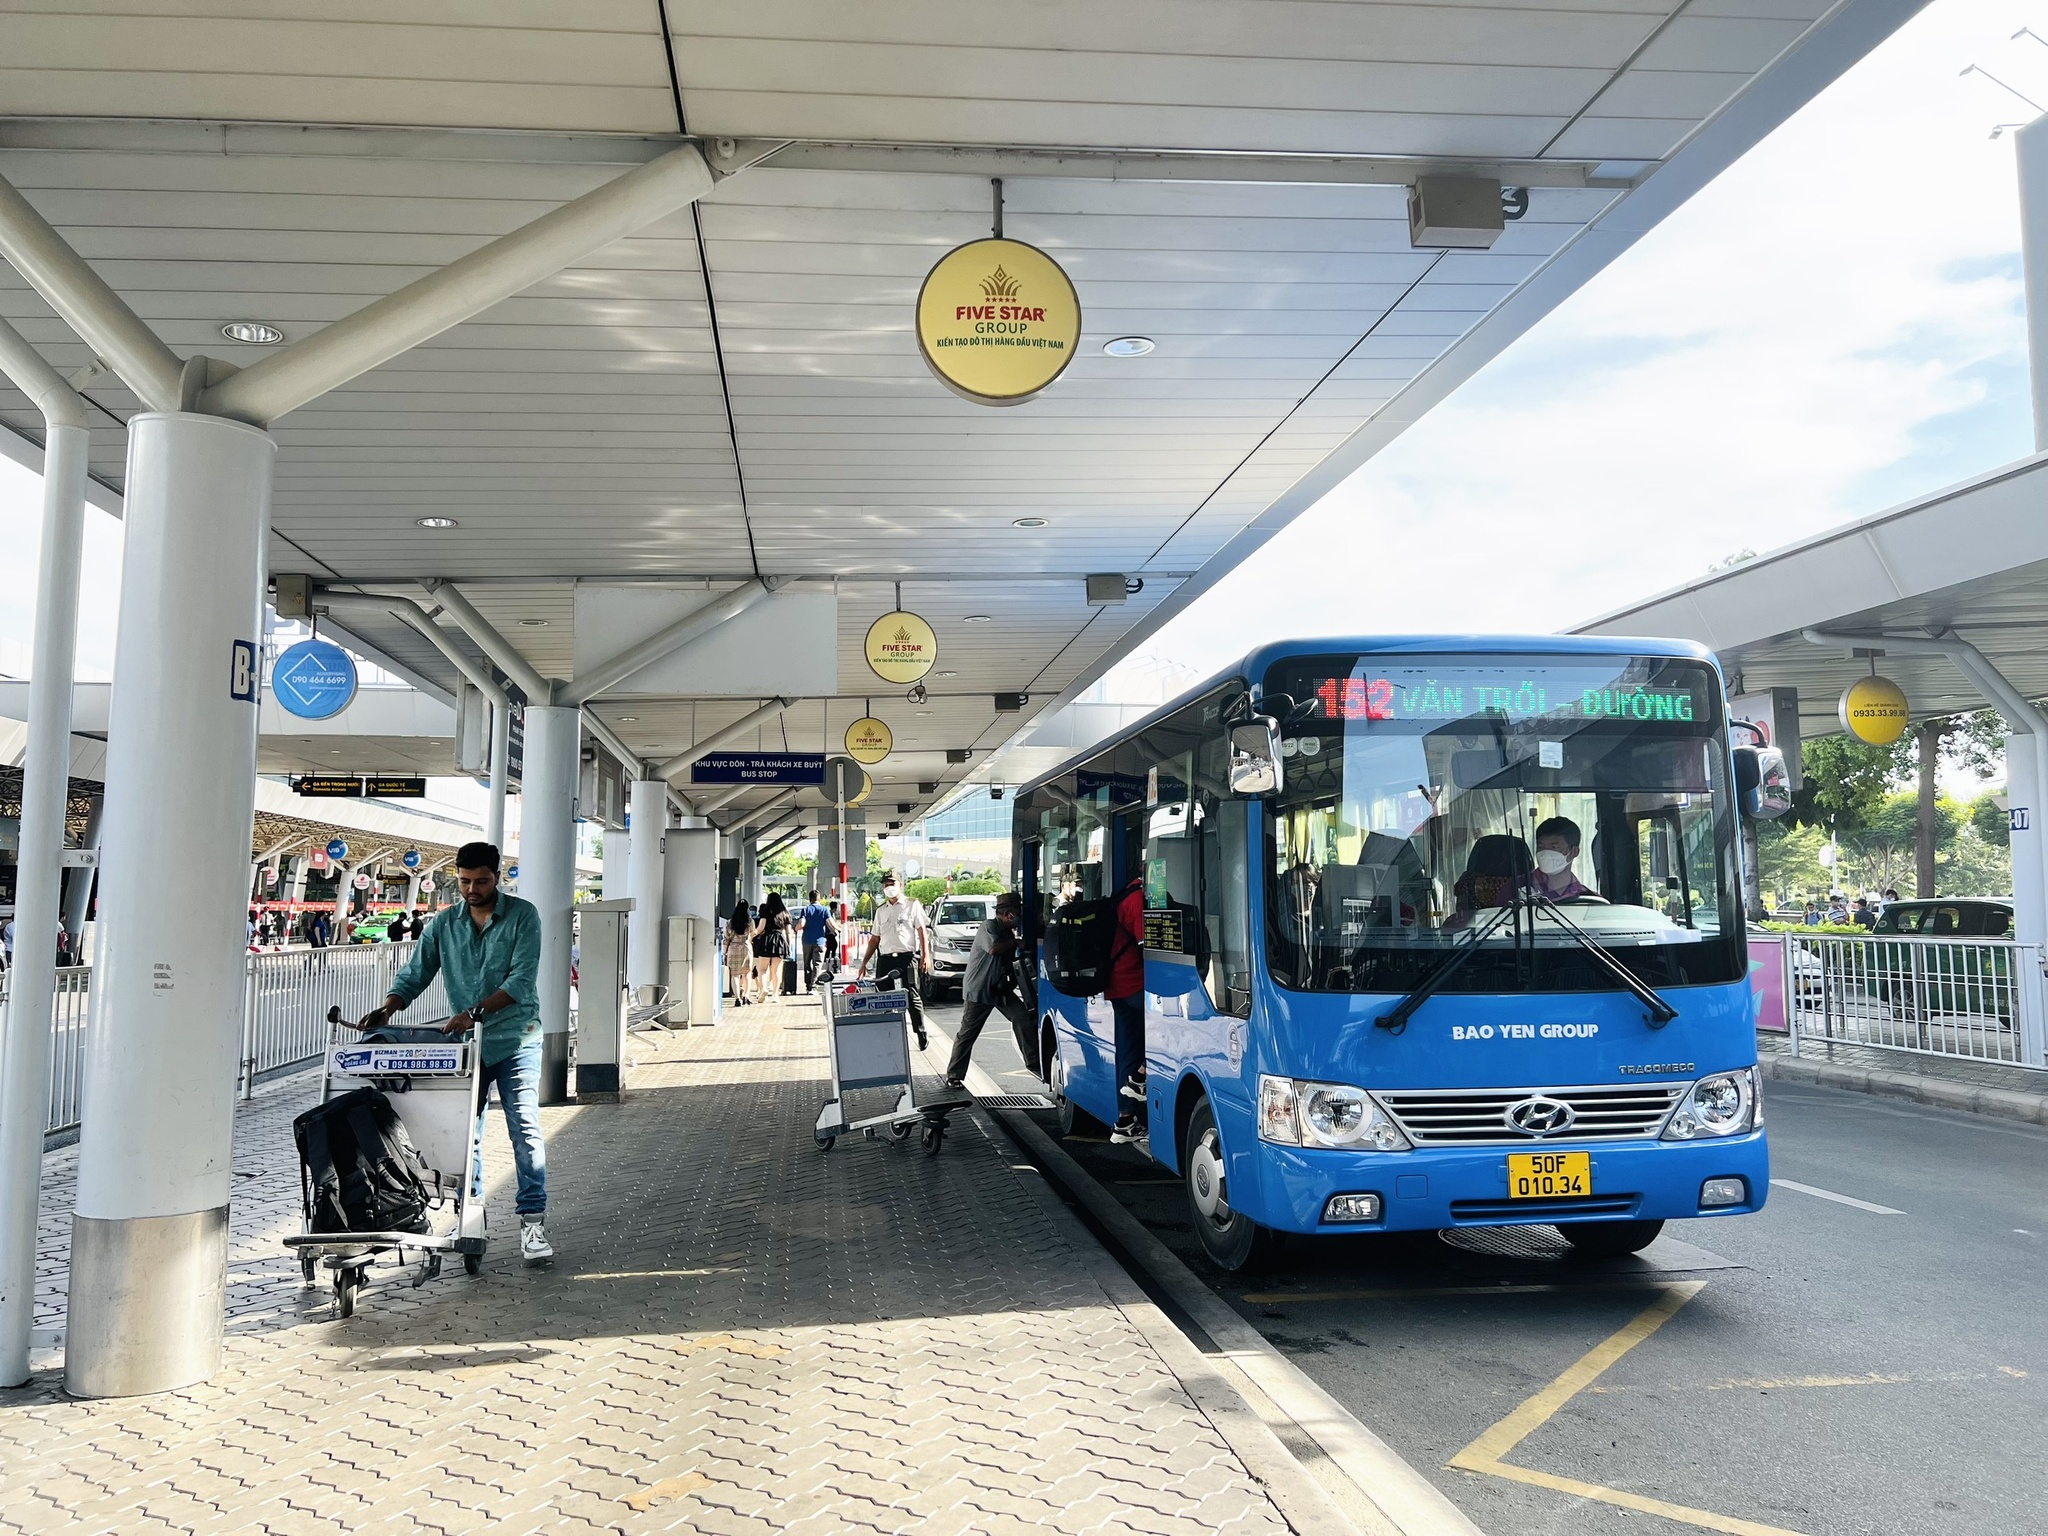 Bãi xe buýt đệm cho sân bay Tân Sơn Nhất có 'xâm hại' công viên Gia Định? - ảnh 1